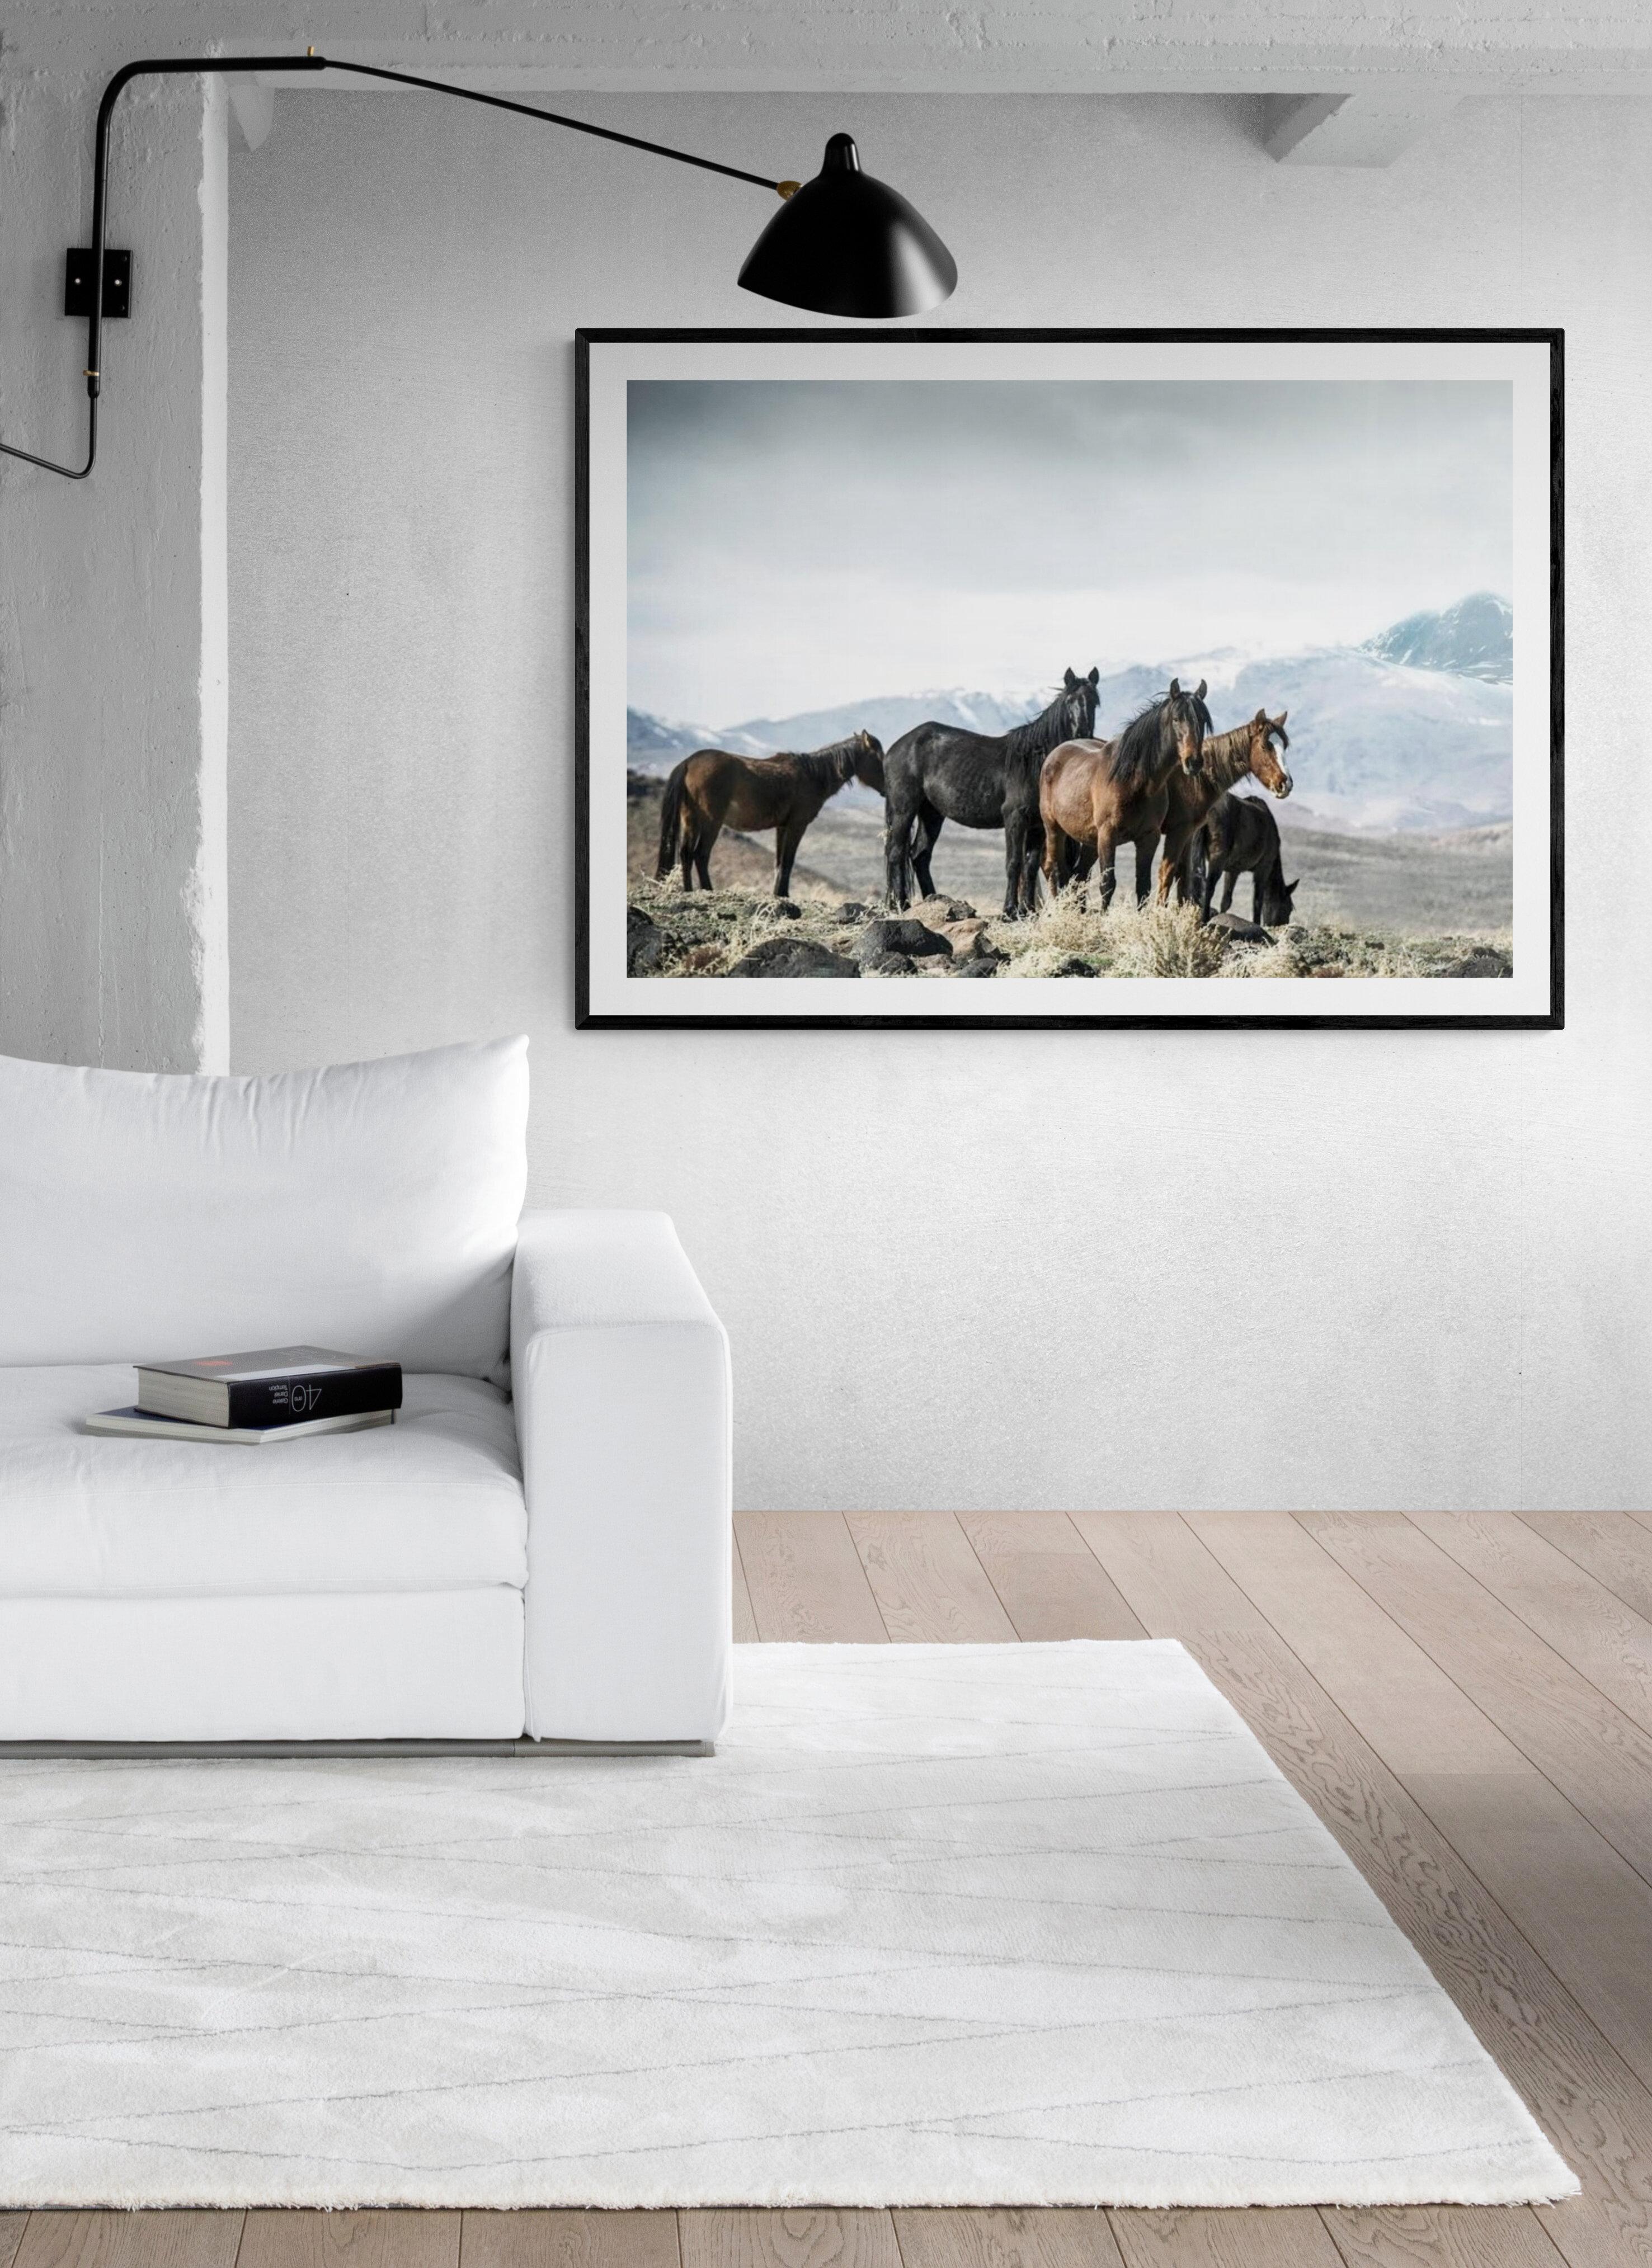 « Fontaines moutardes » 40x60  Photographie de chevaux sauvages, Art occidental  Non signé  - Print de Shane Russeck